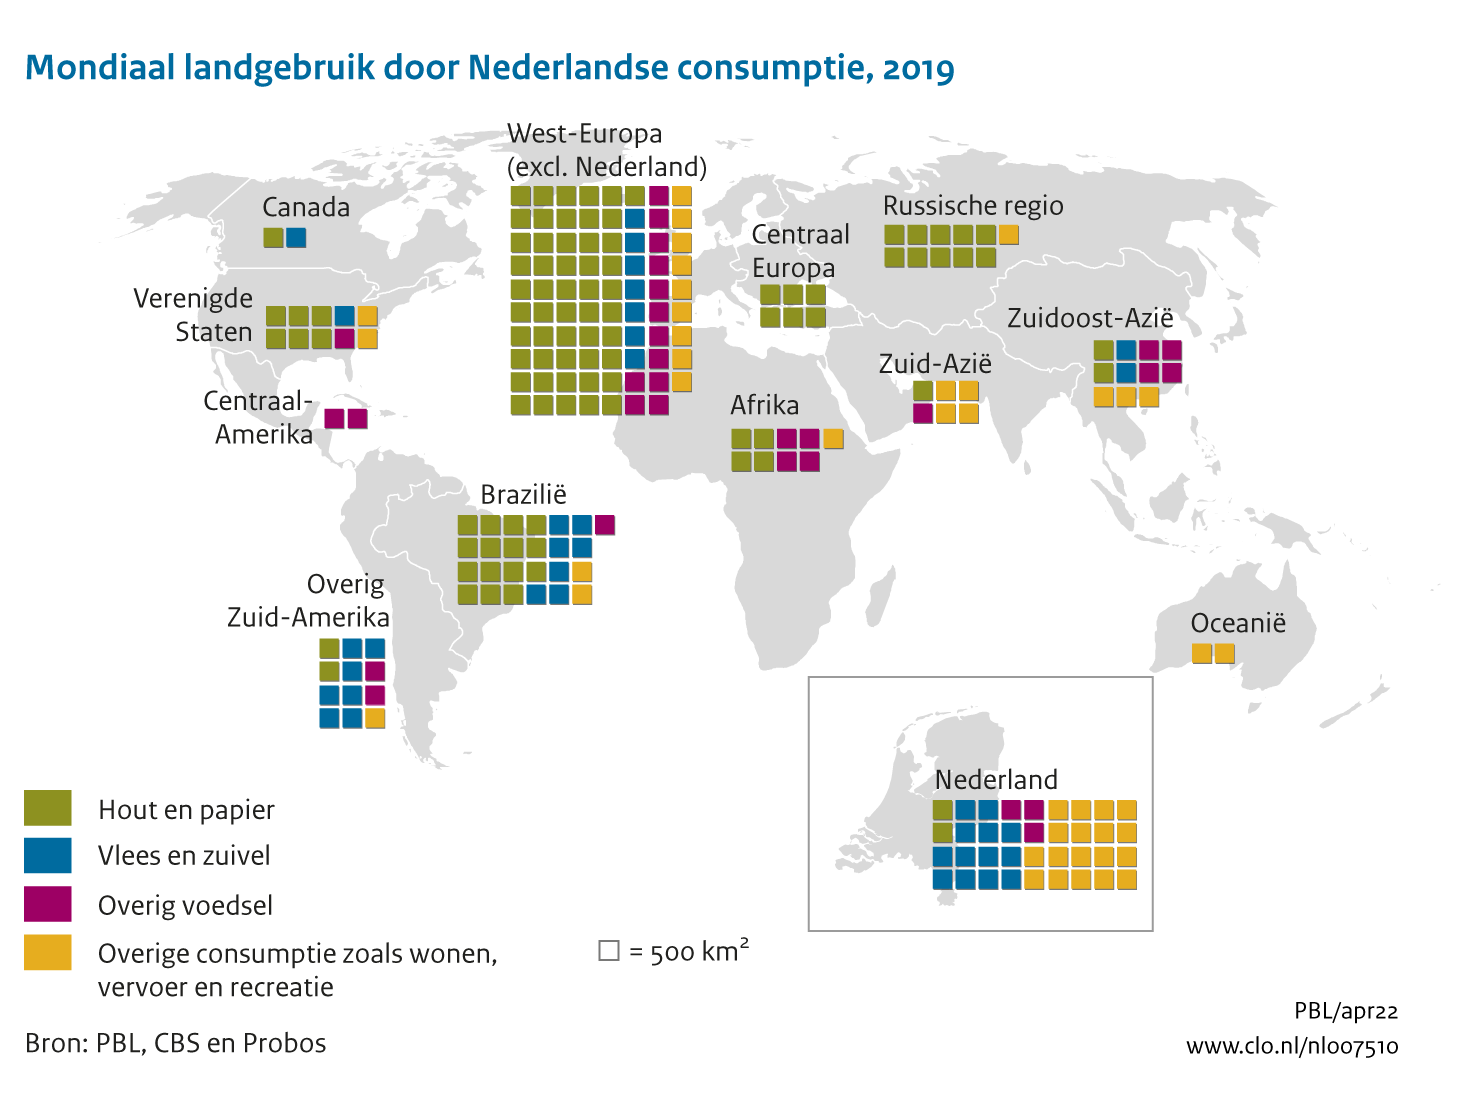 Figuur  Landgebruik door Nederlandse consumptie naar regio. In de rest van de tekst wordt deze figuur uitgebreider uitgelegd.